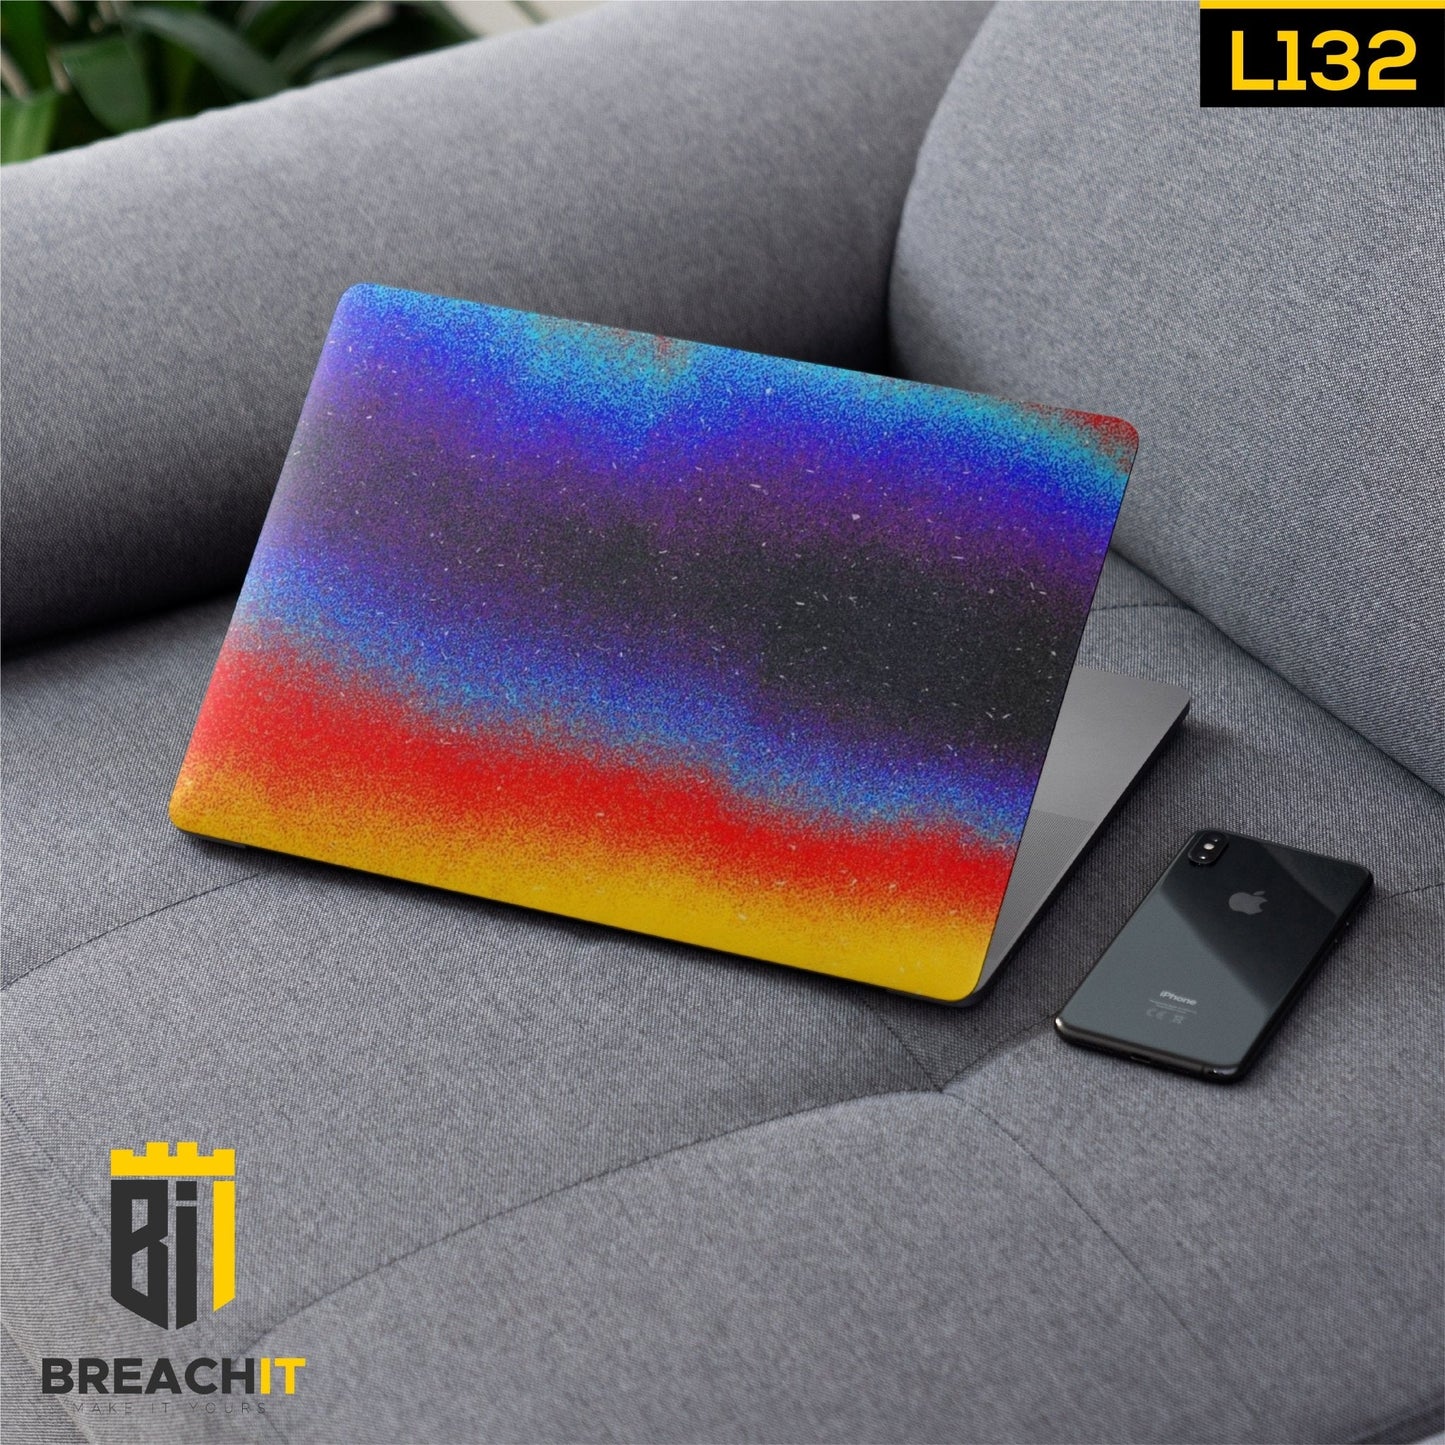 L132 Colorful Laptop Skin - BREACHIT